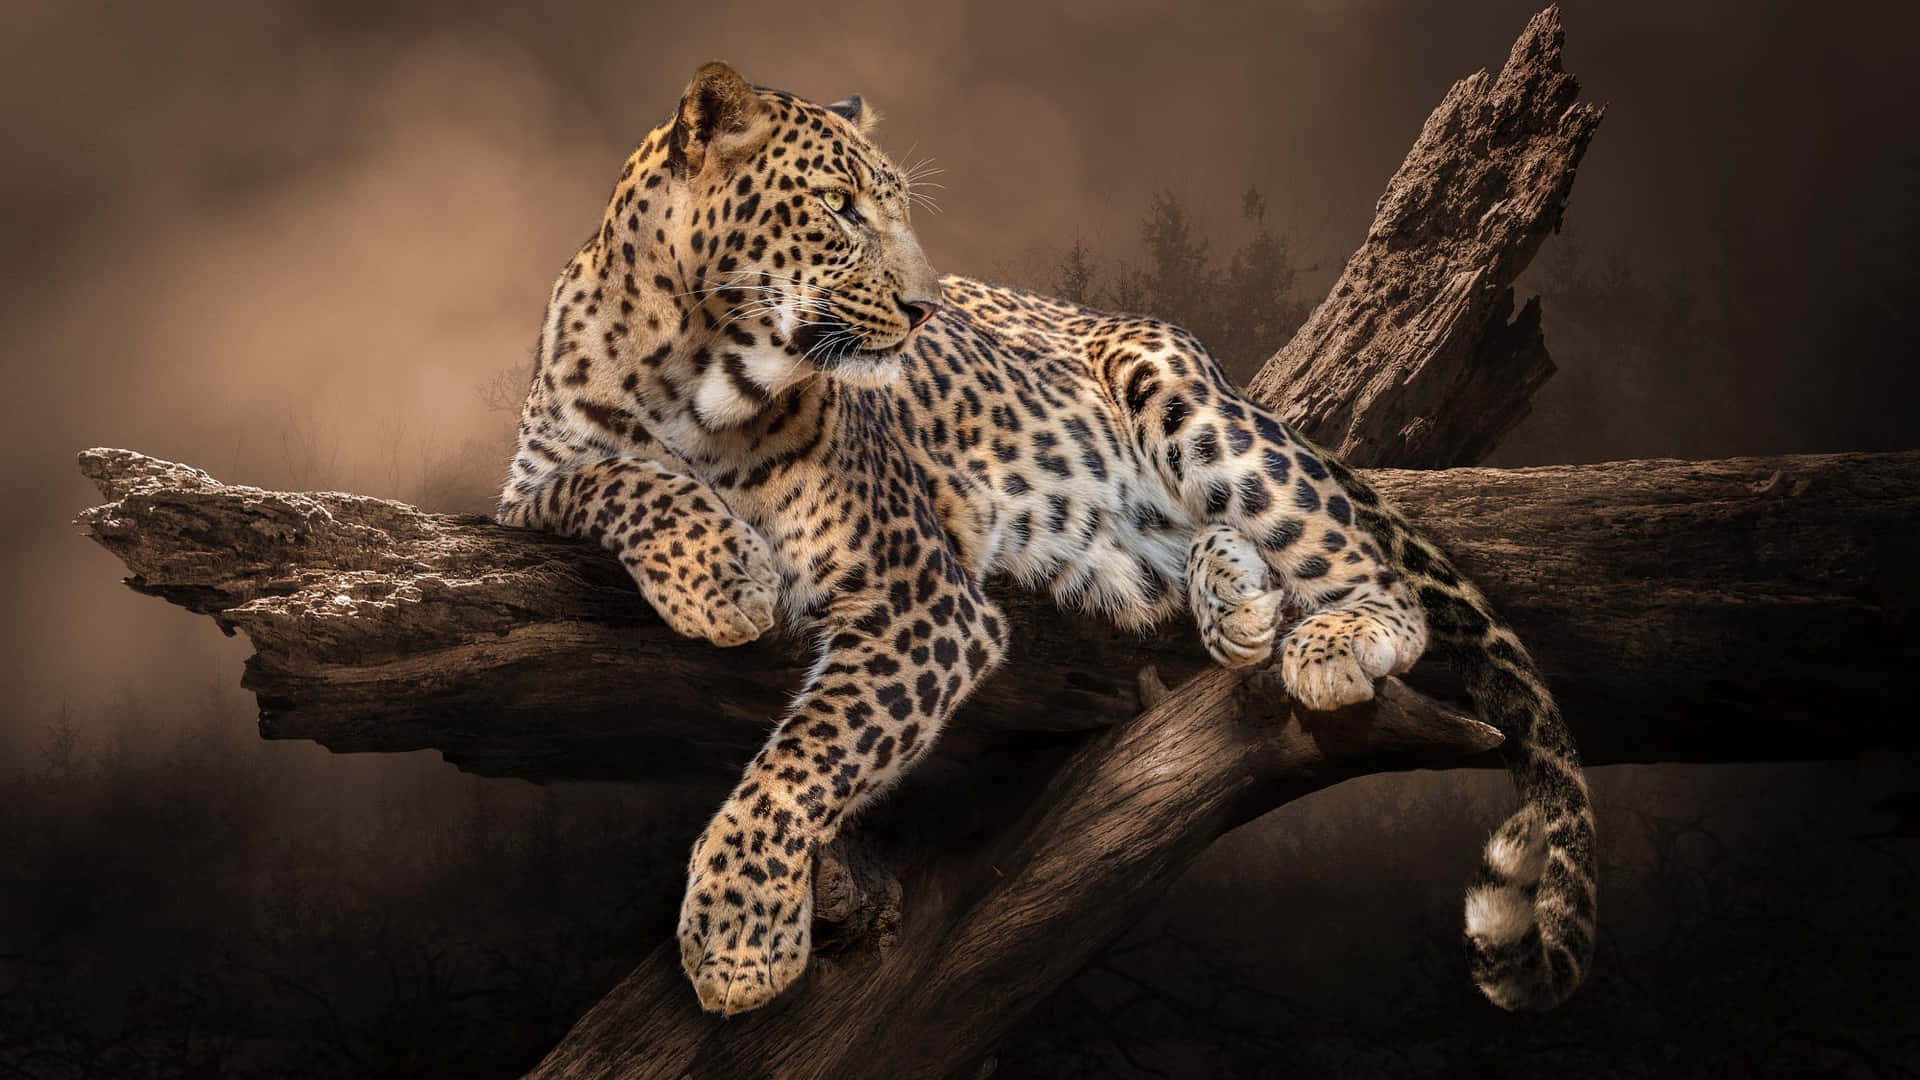 Unoscatto Ravvicinato Di Un Magnifico Leopardo Nel Suo Stupefacente Habitat Naturale.